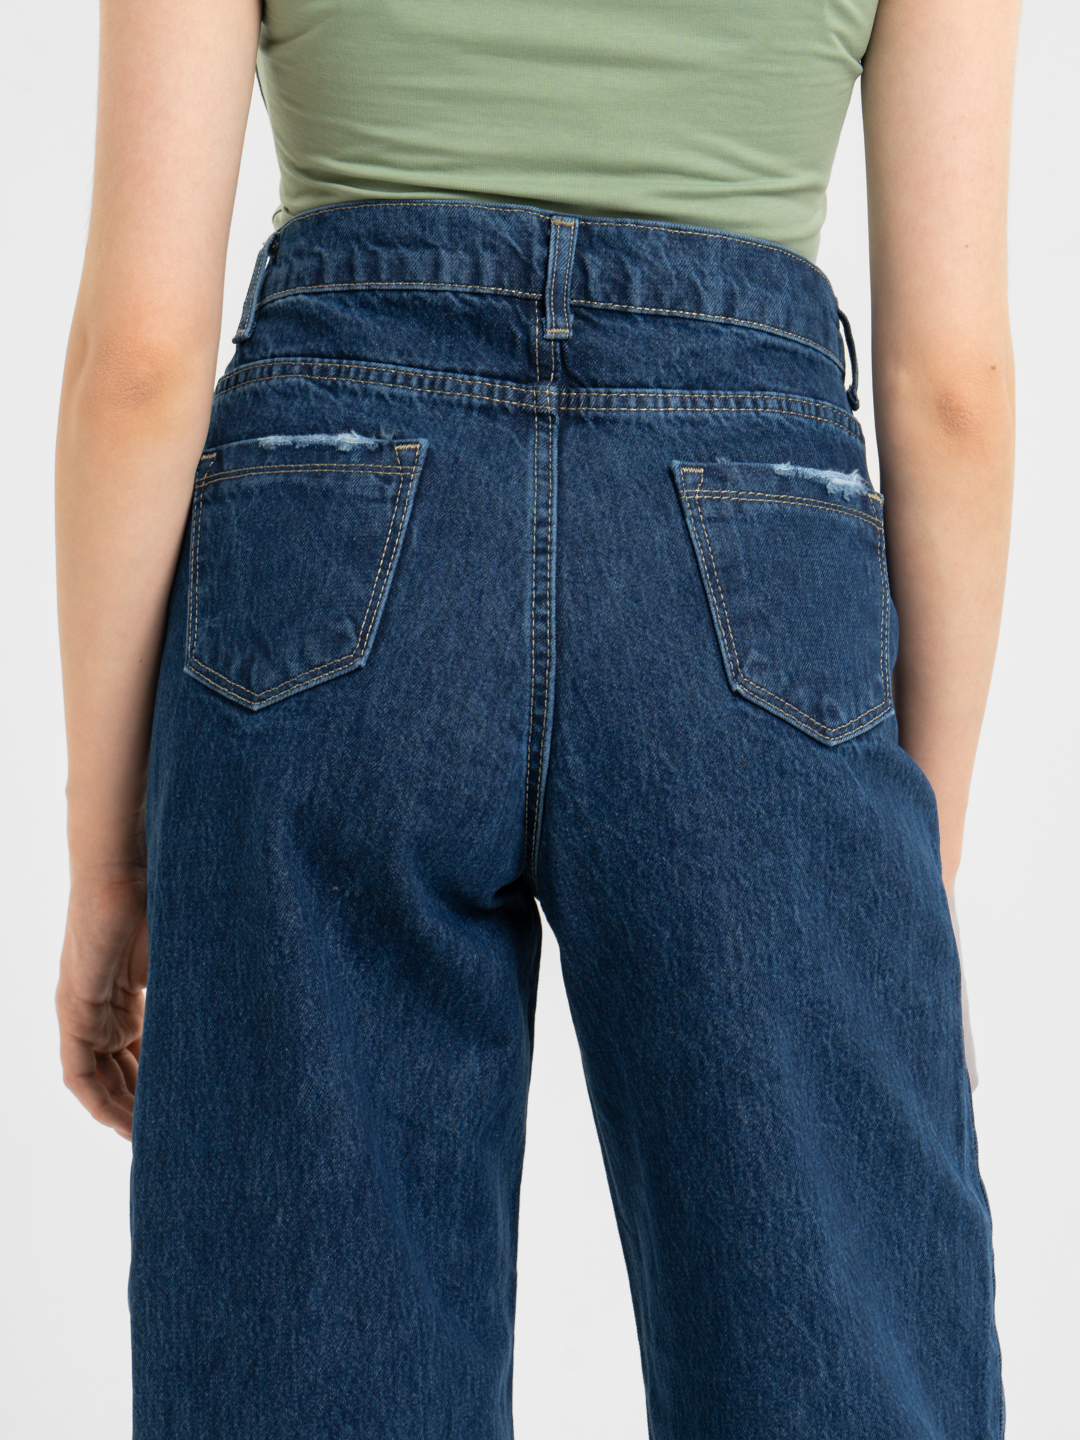 Джинсы женские, широкие брюки трубы палаццо кюлоты купить по цене 999 ₽ винтернет-магазине KazanExpress